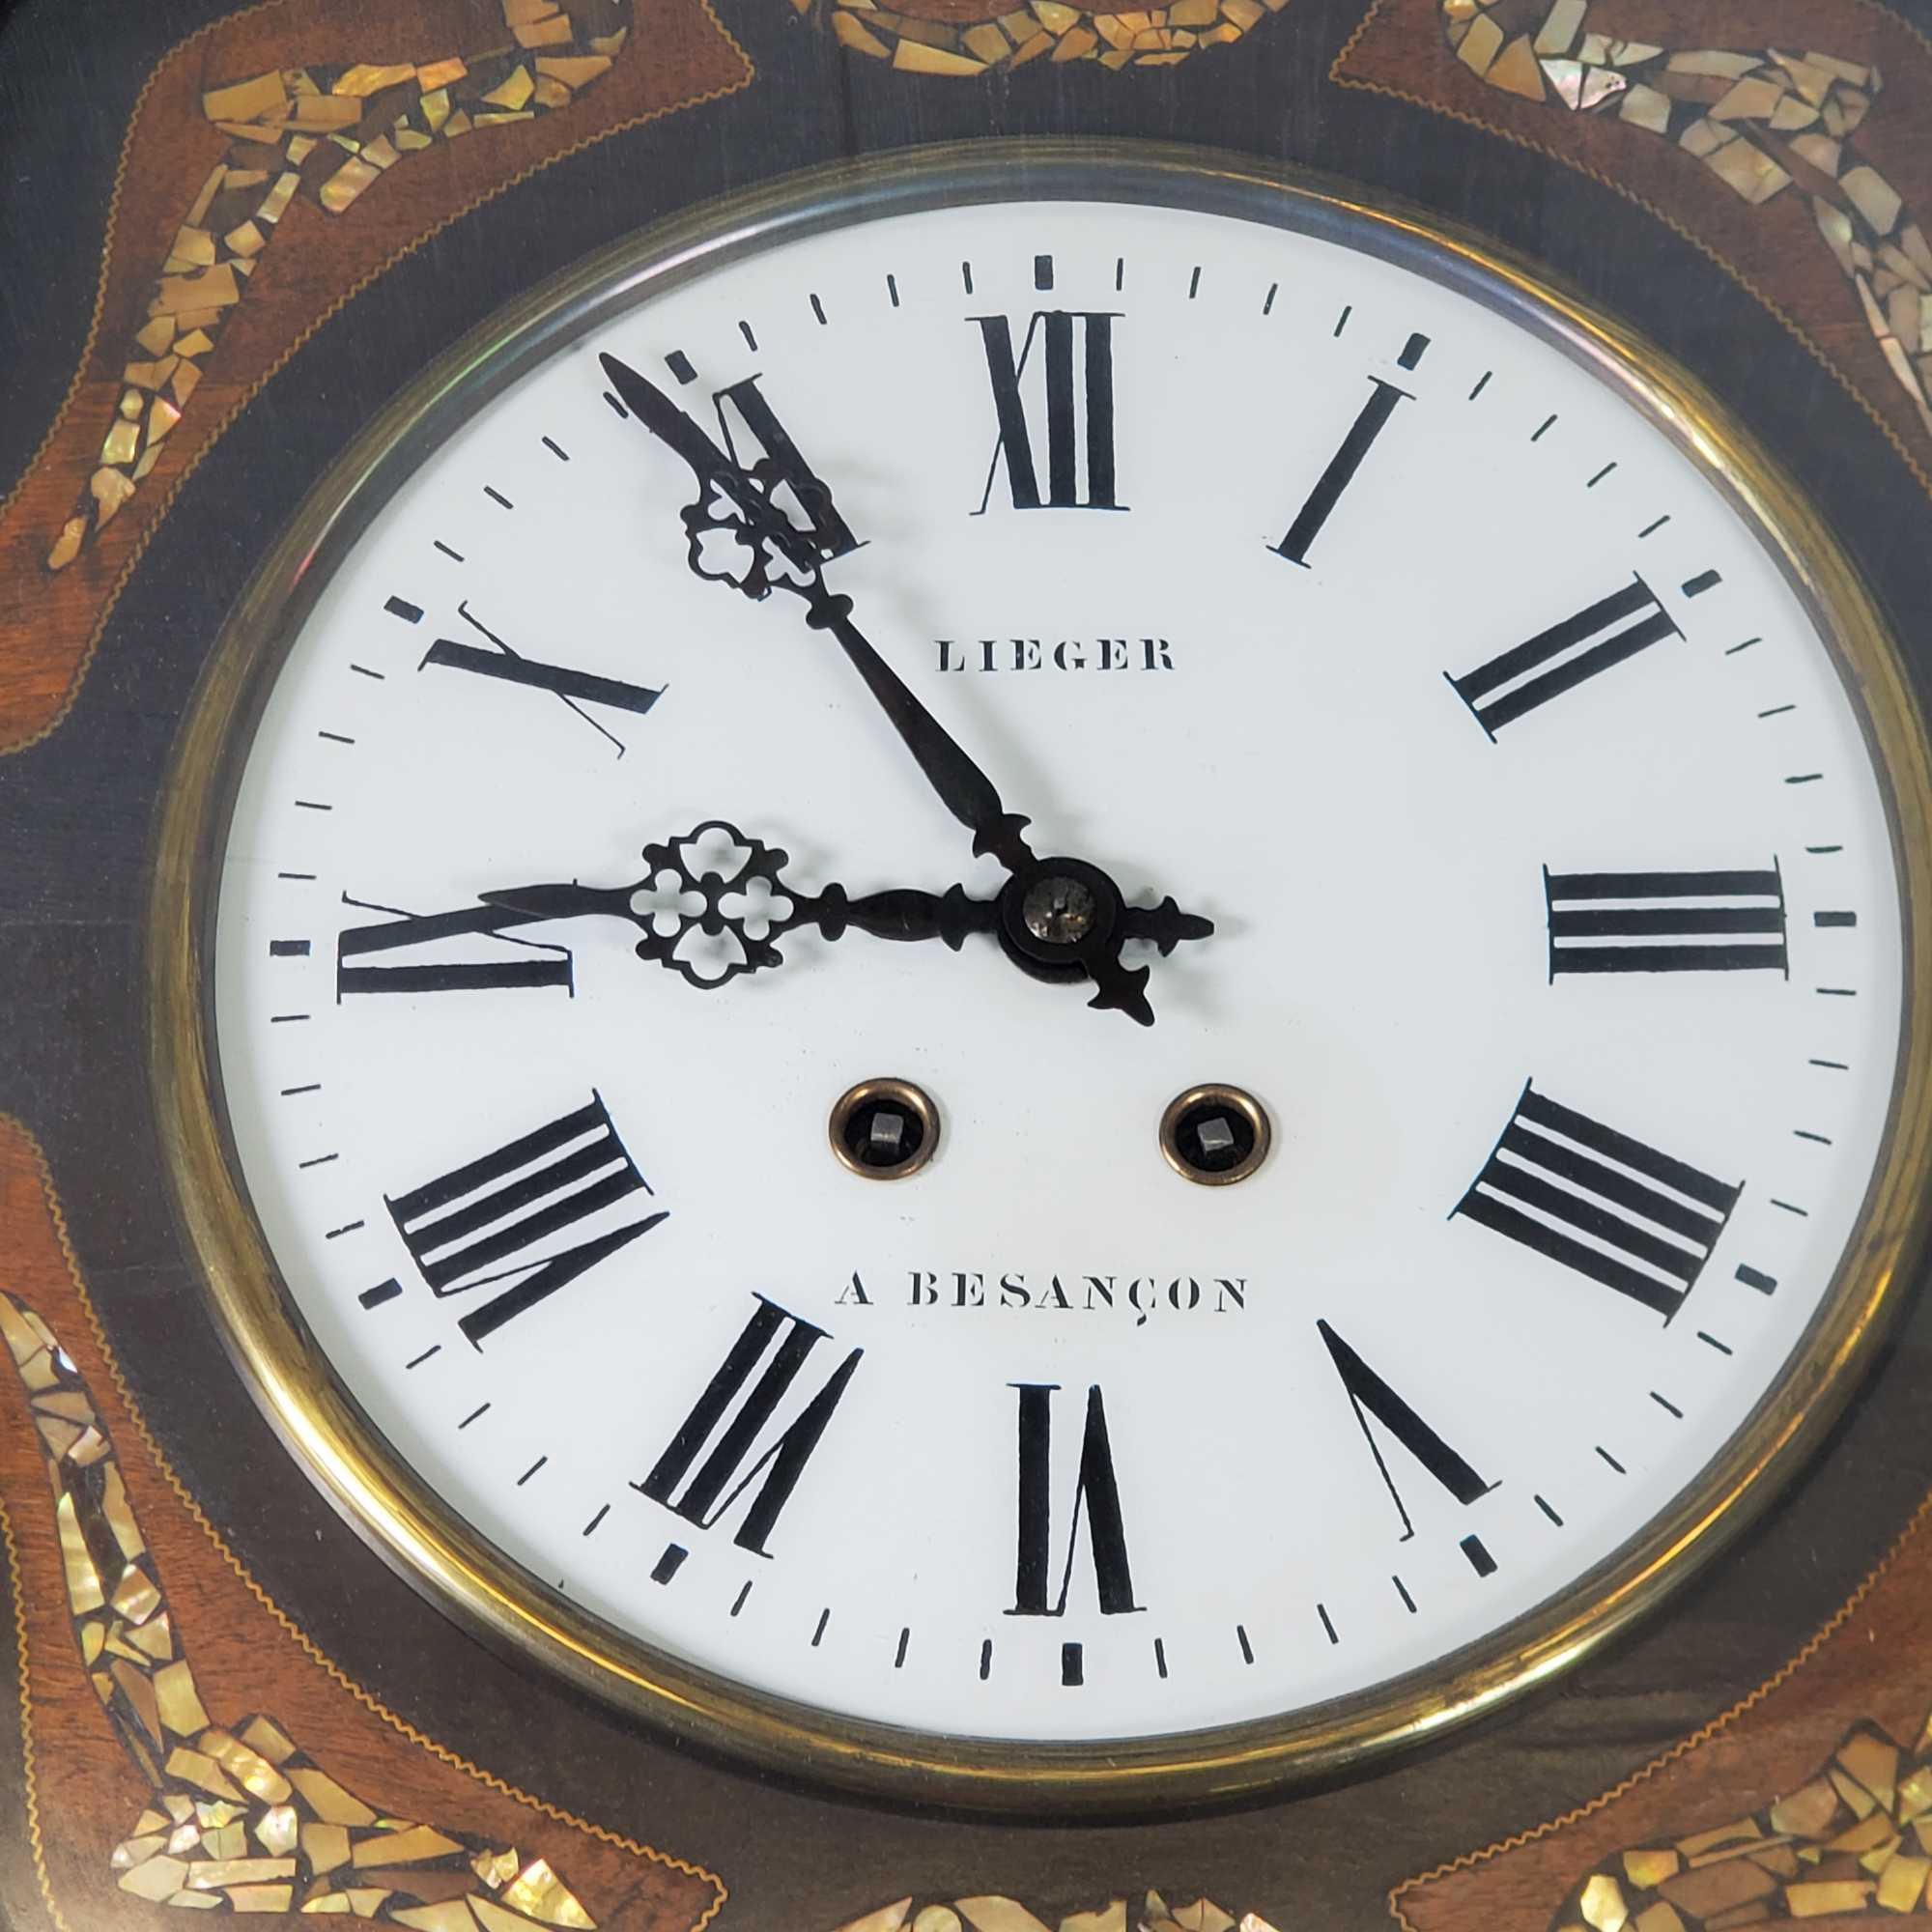 Lieger & A. Besancon Wall Hung Regulator Clock